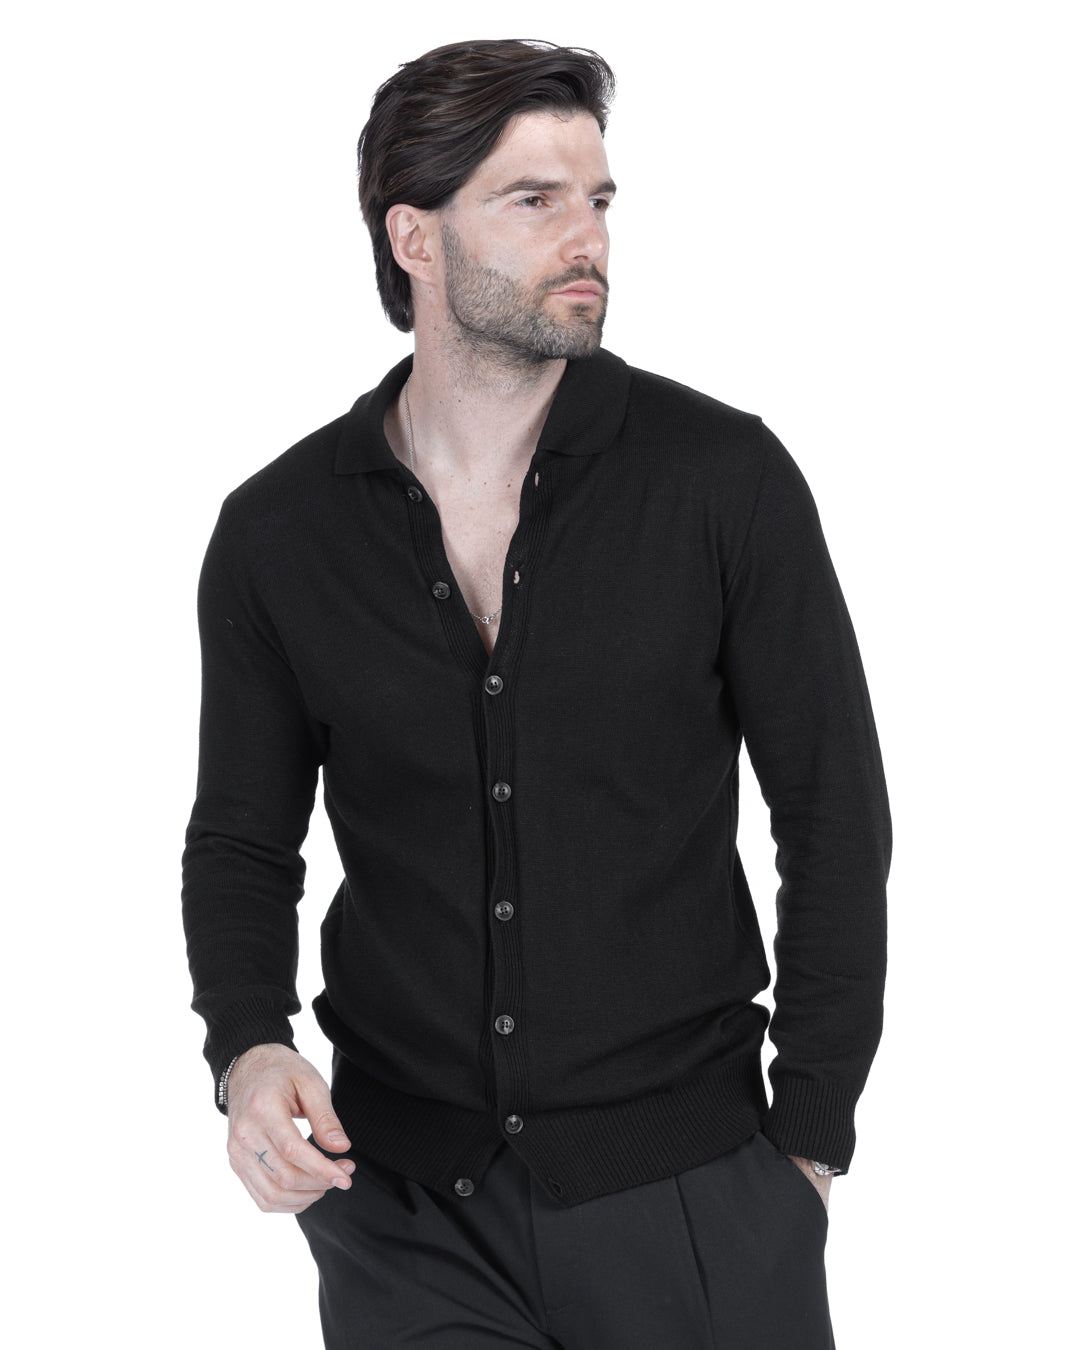 Marlon - black shirt cardigan